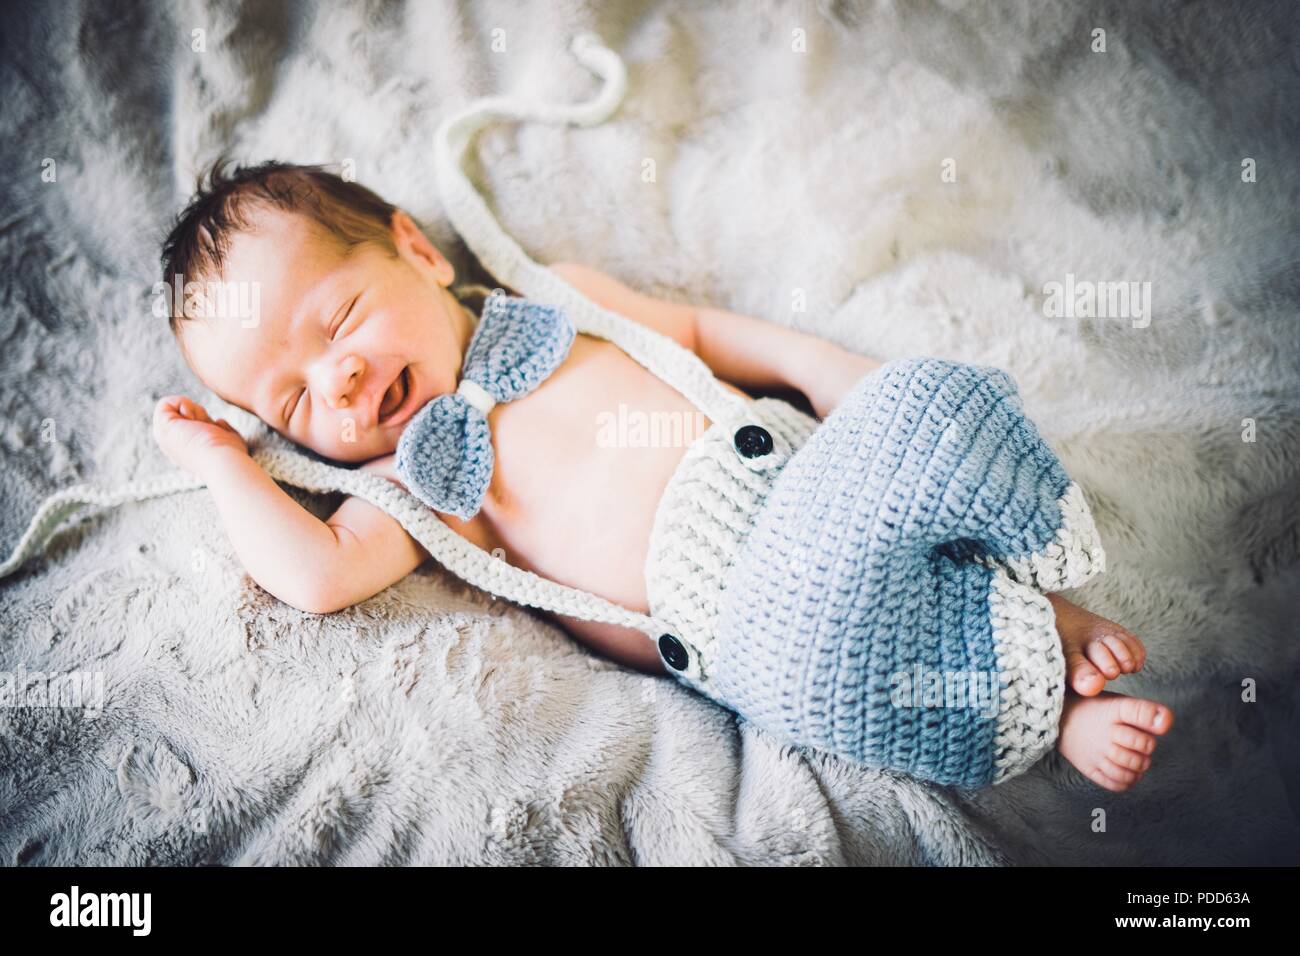 Un neonato Bambino addormentato in blu e grigio in maglia di bow tie e pantaloni Foto Stock